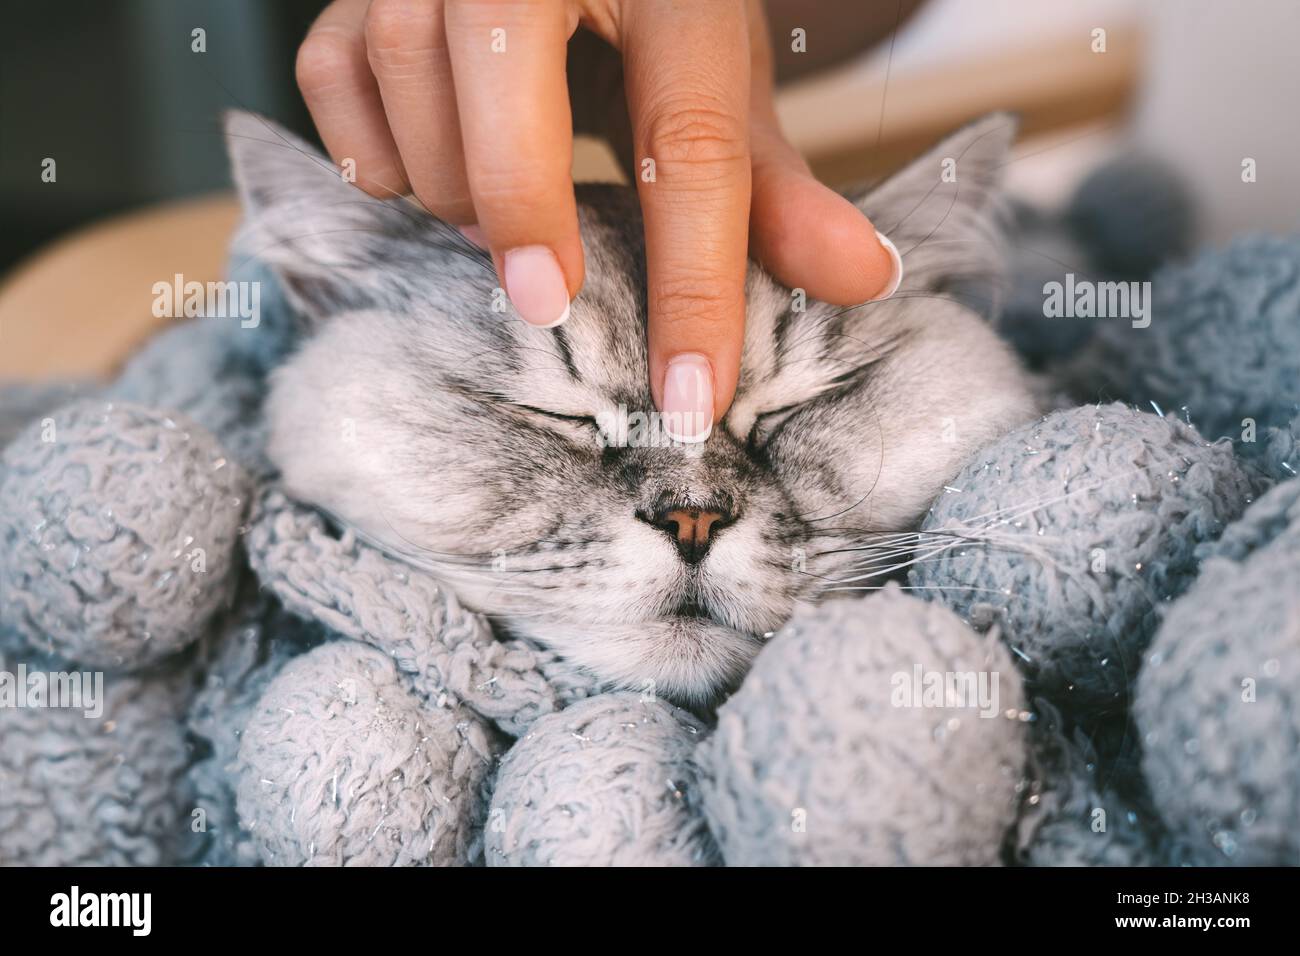 Frau streichelt niedliche schöne Katze, die in warmen gemütlichen Decke schläft. Katze ruht oder entspannt in den Armen der Frau. Menschen und Haustiere vertrauen und lieben Konzept Stockfoto